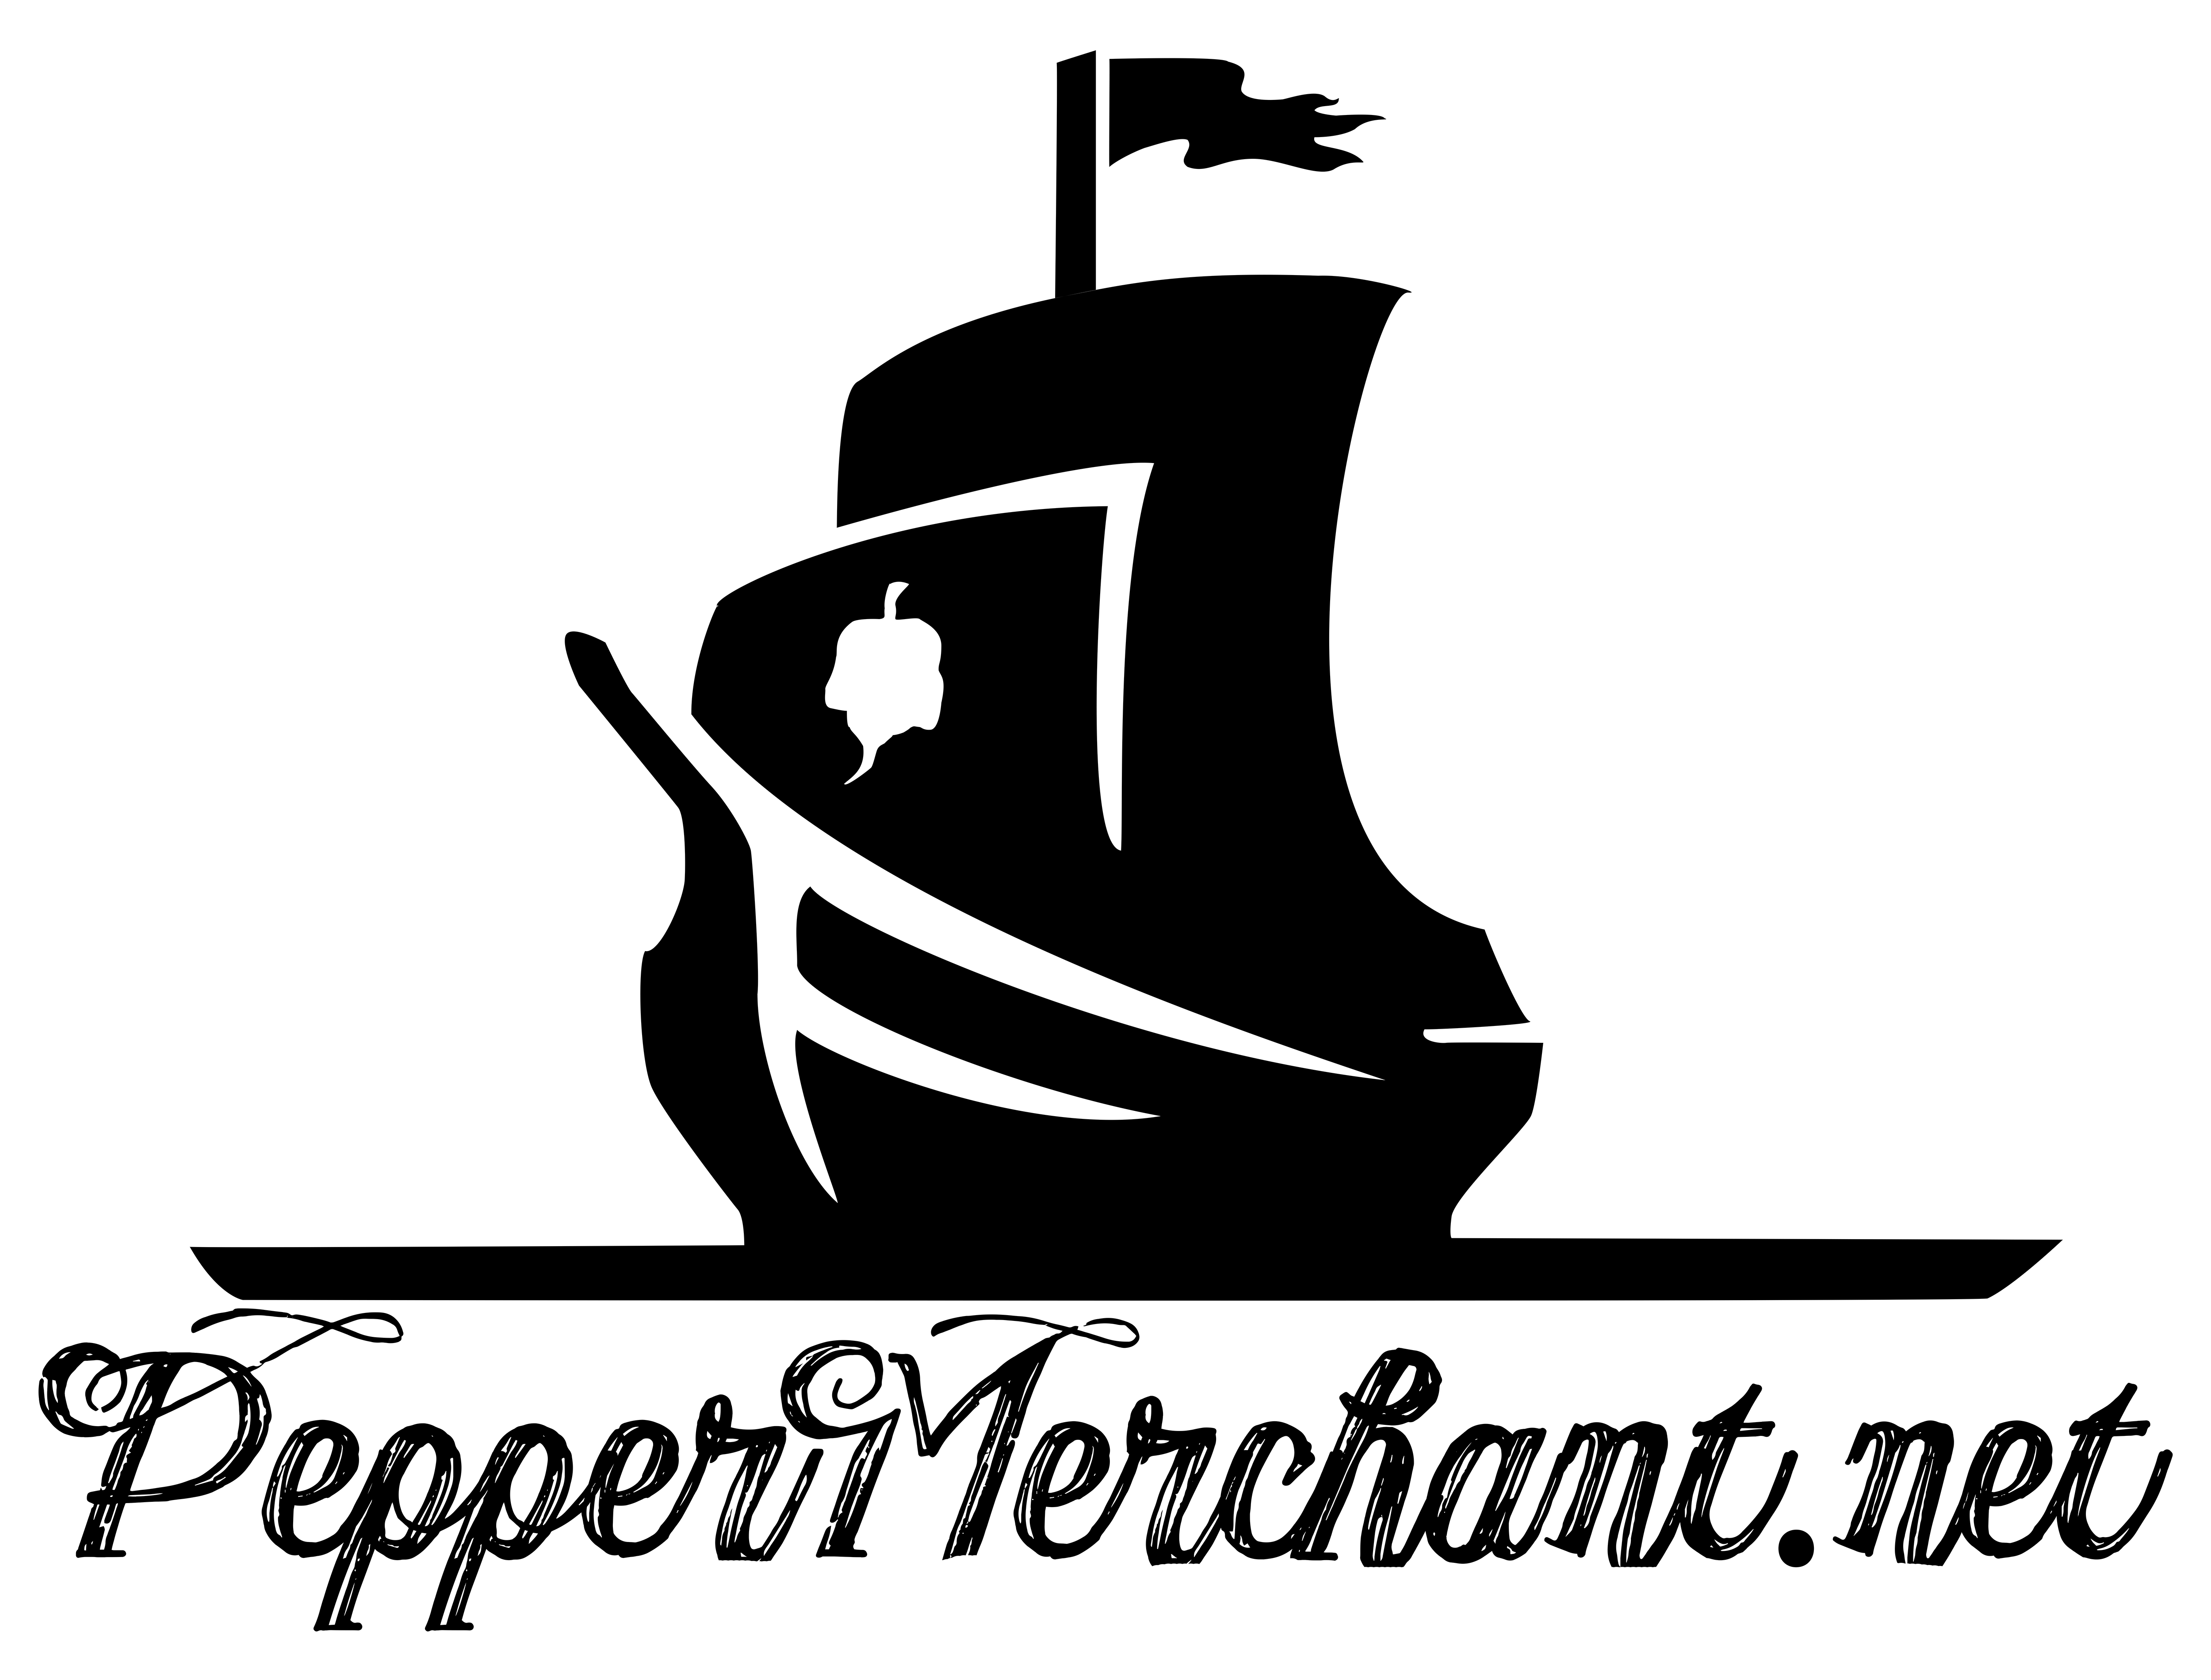 www.peppermerchant.net